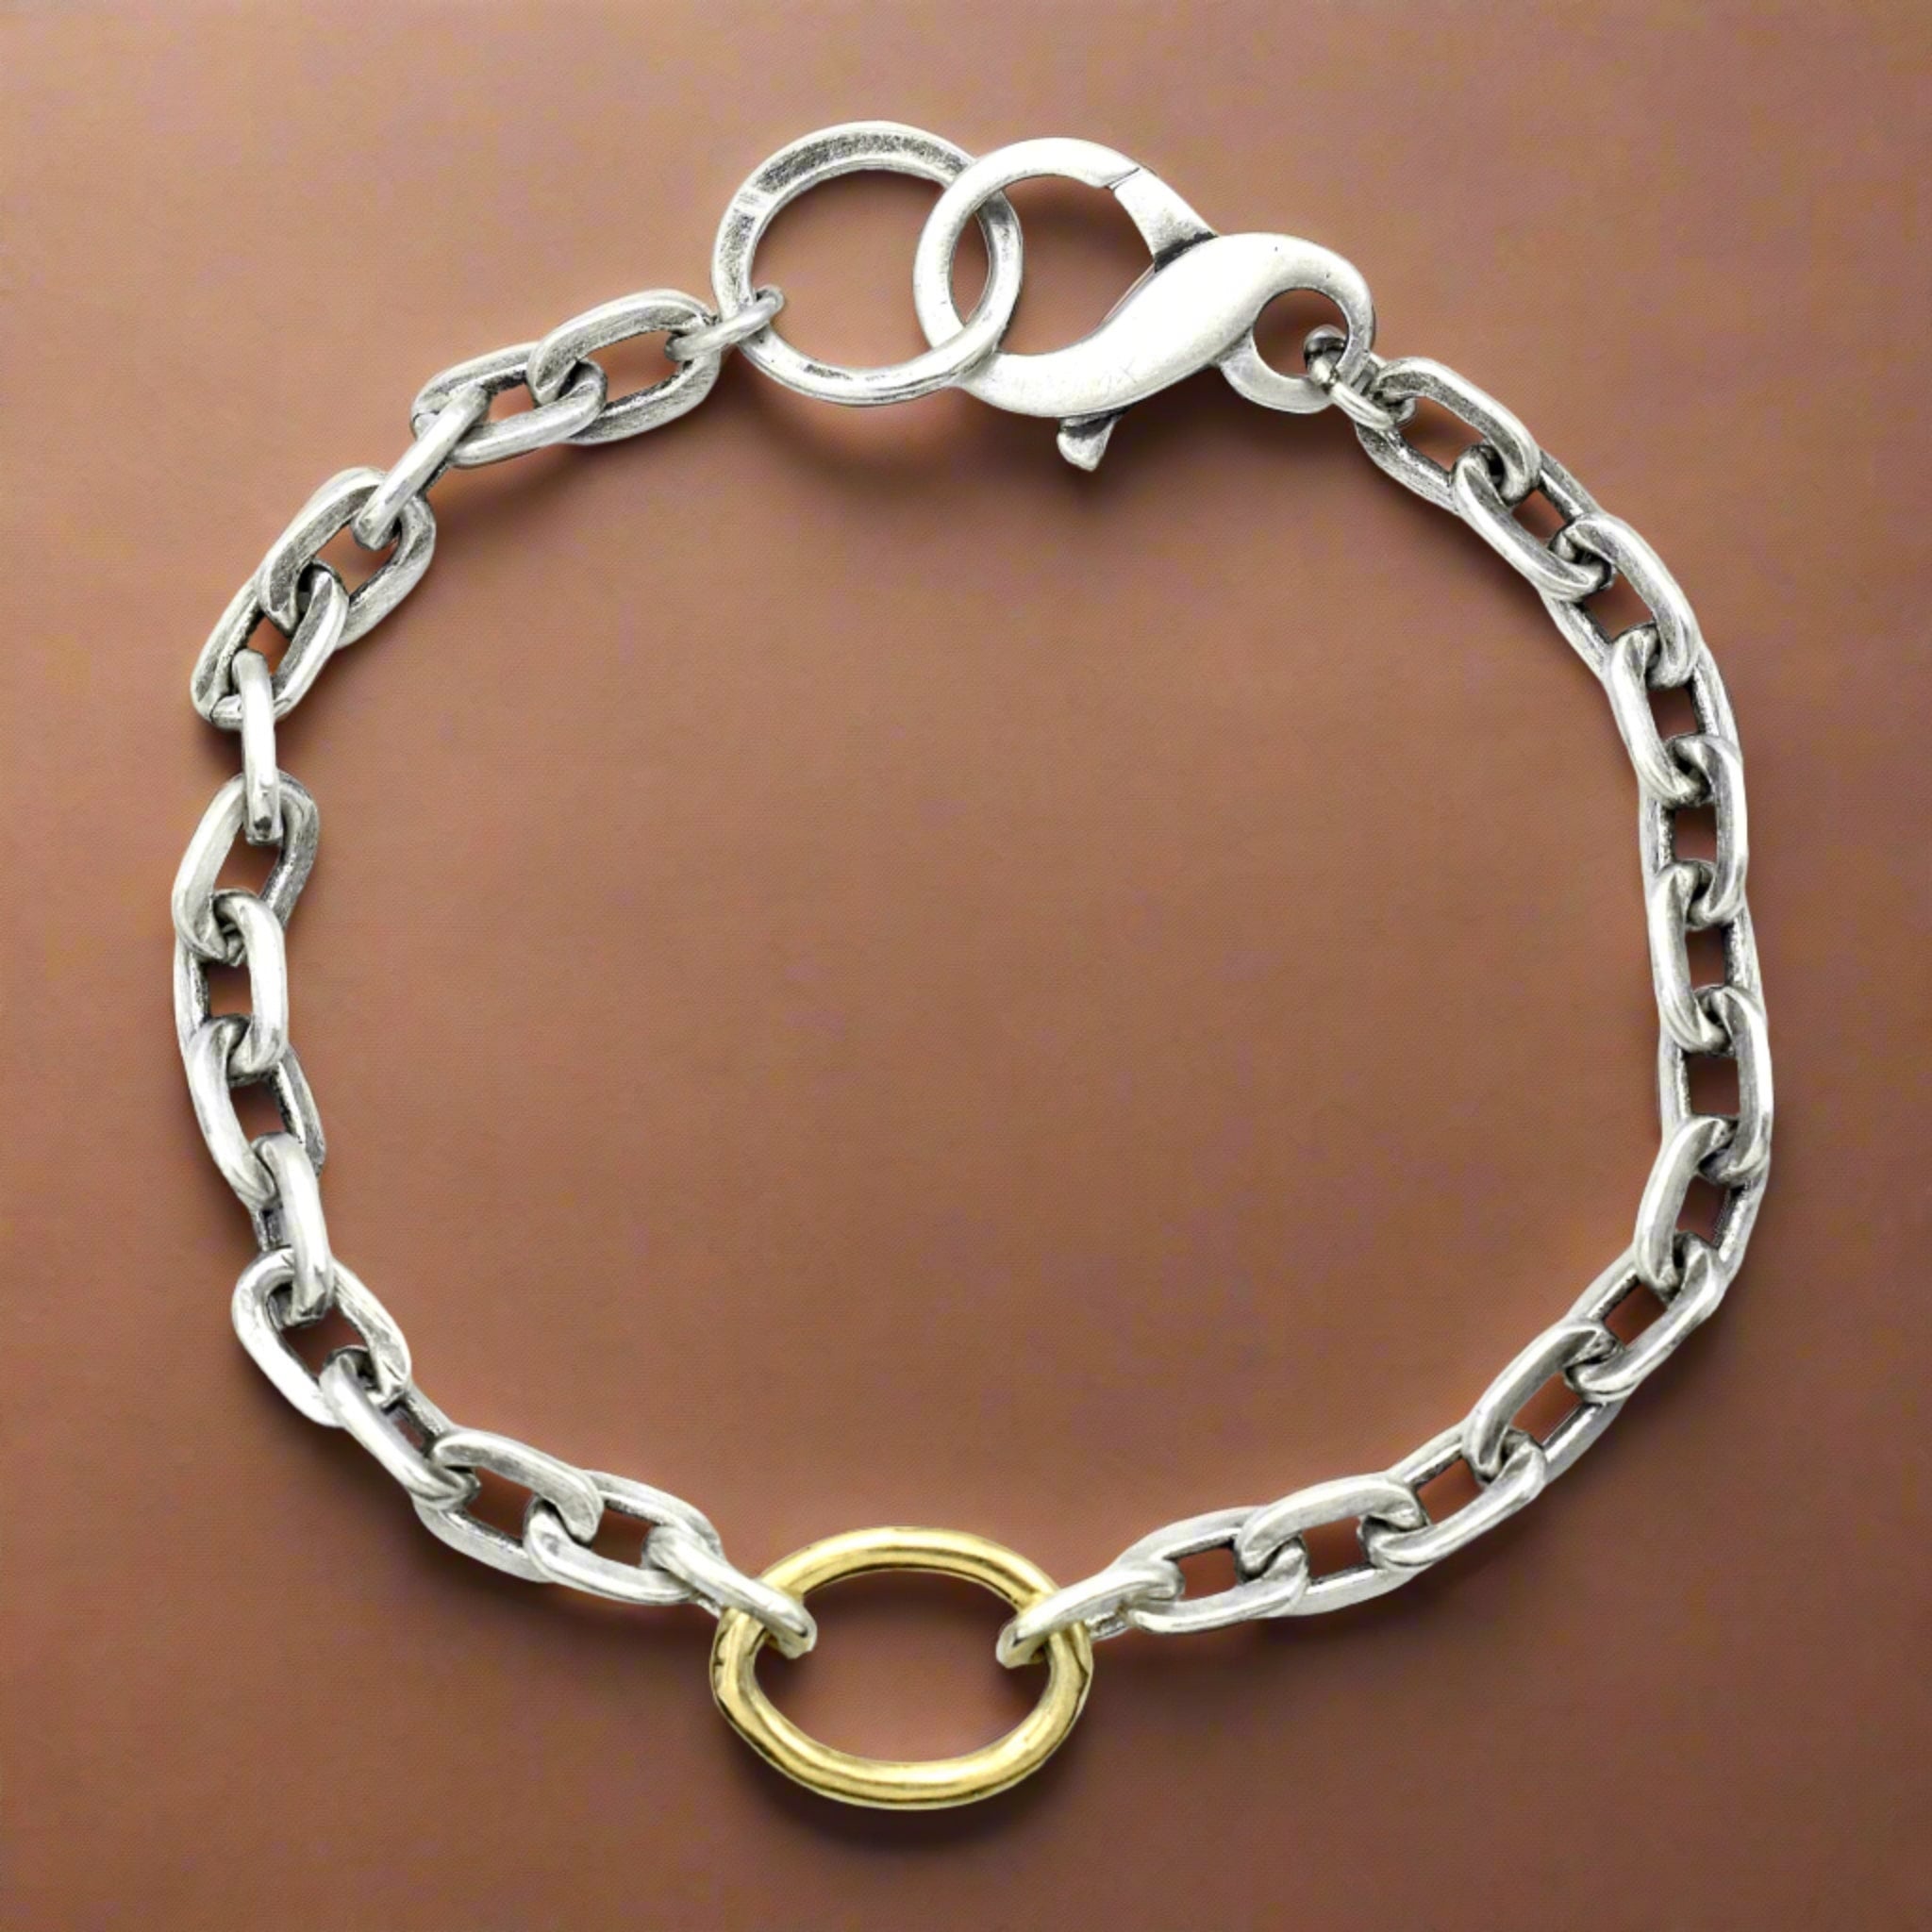 Forge Link Bracelet - Bracelets